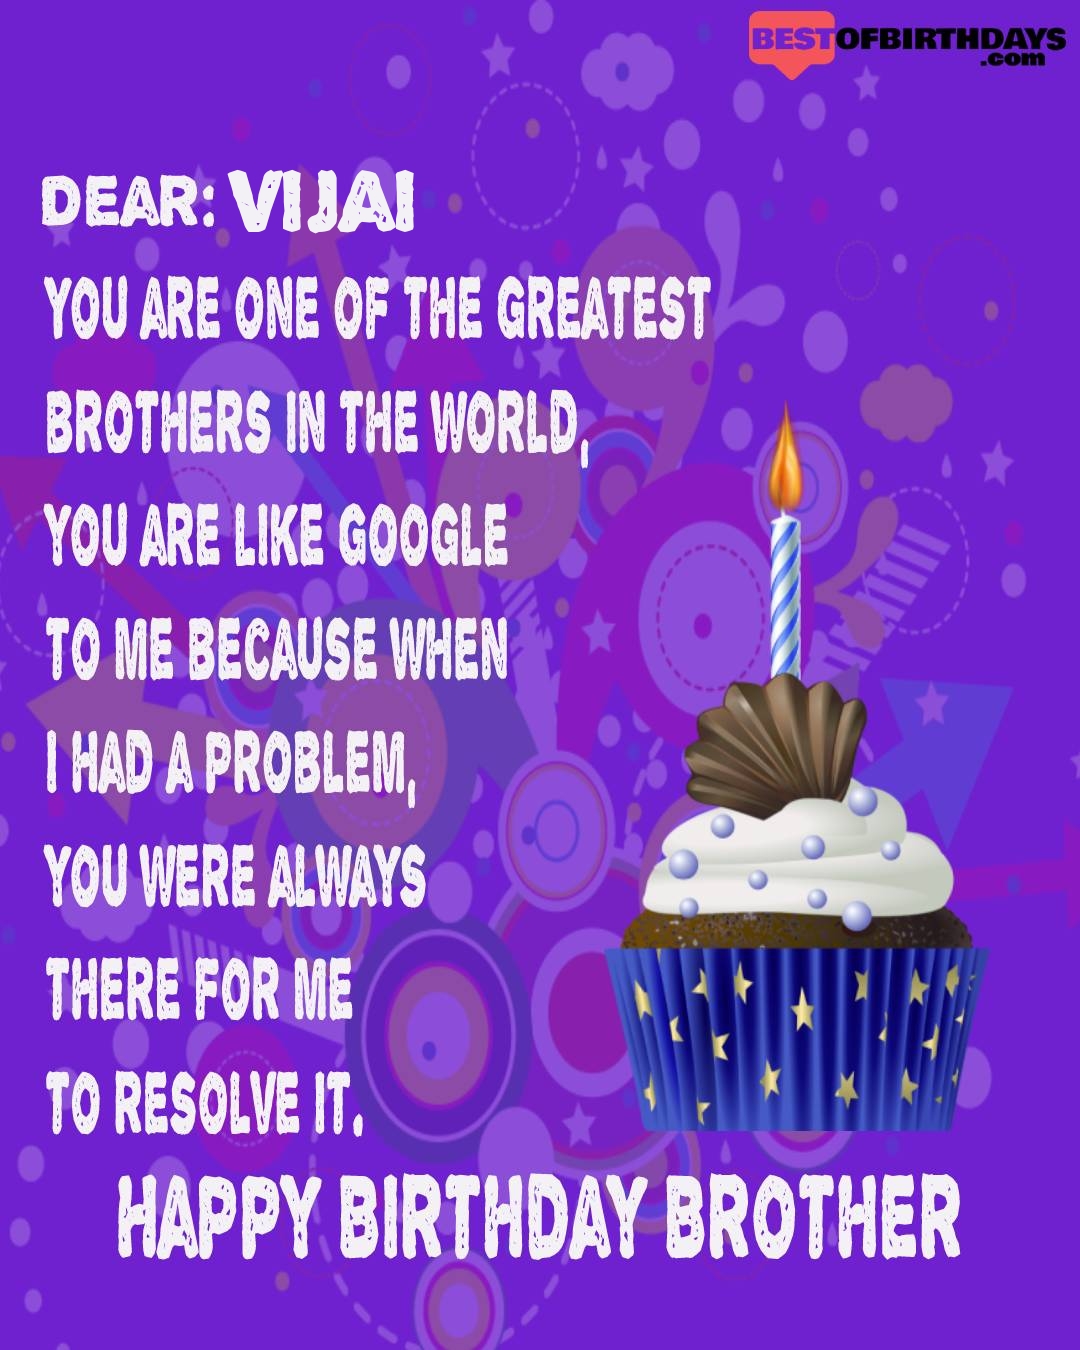 Happy birthday vijai bhai brother bro